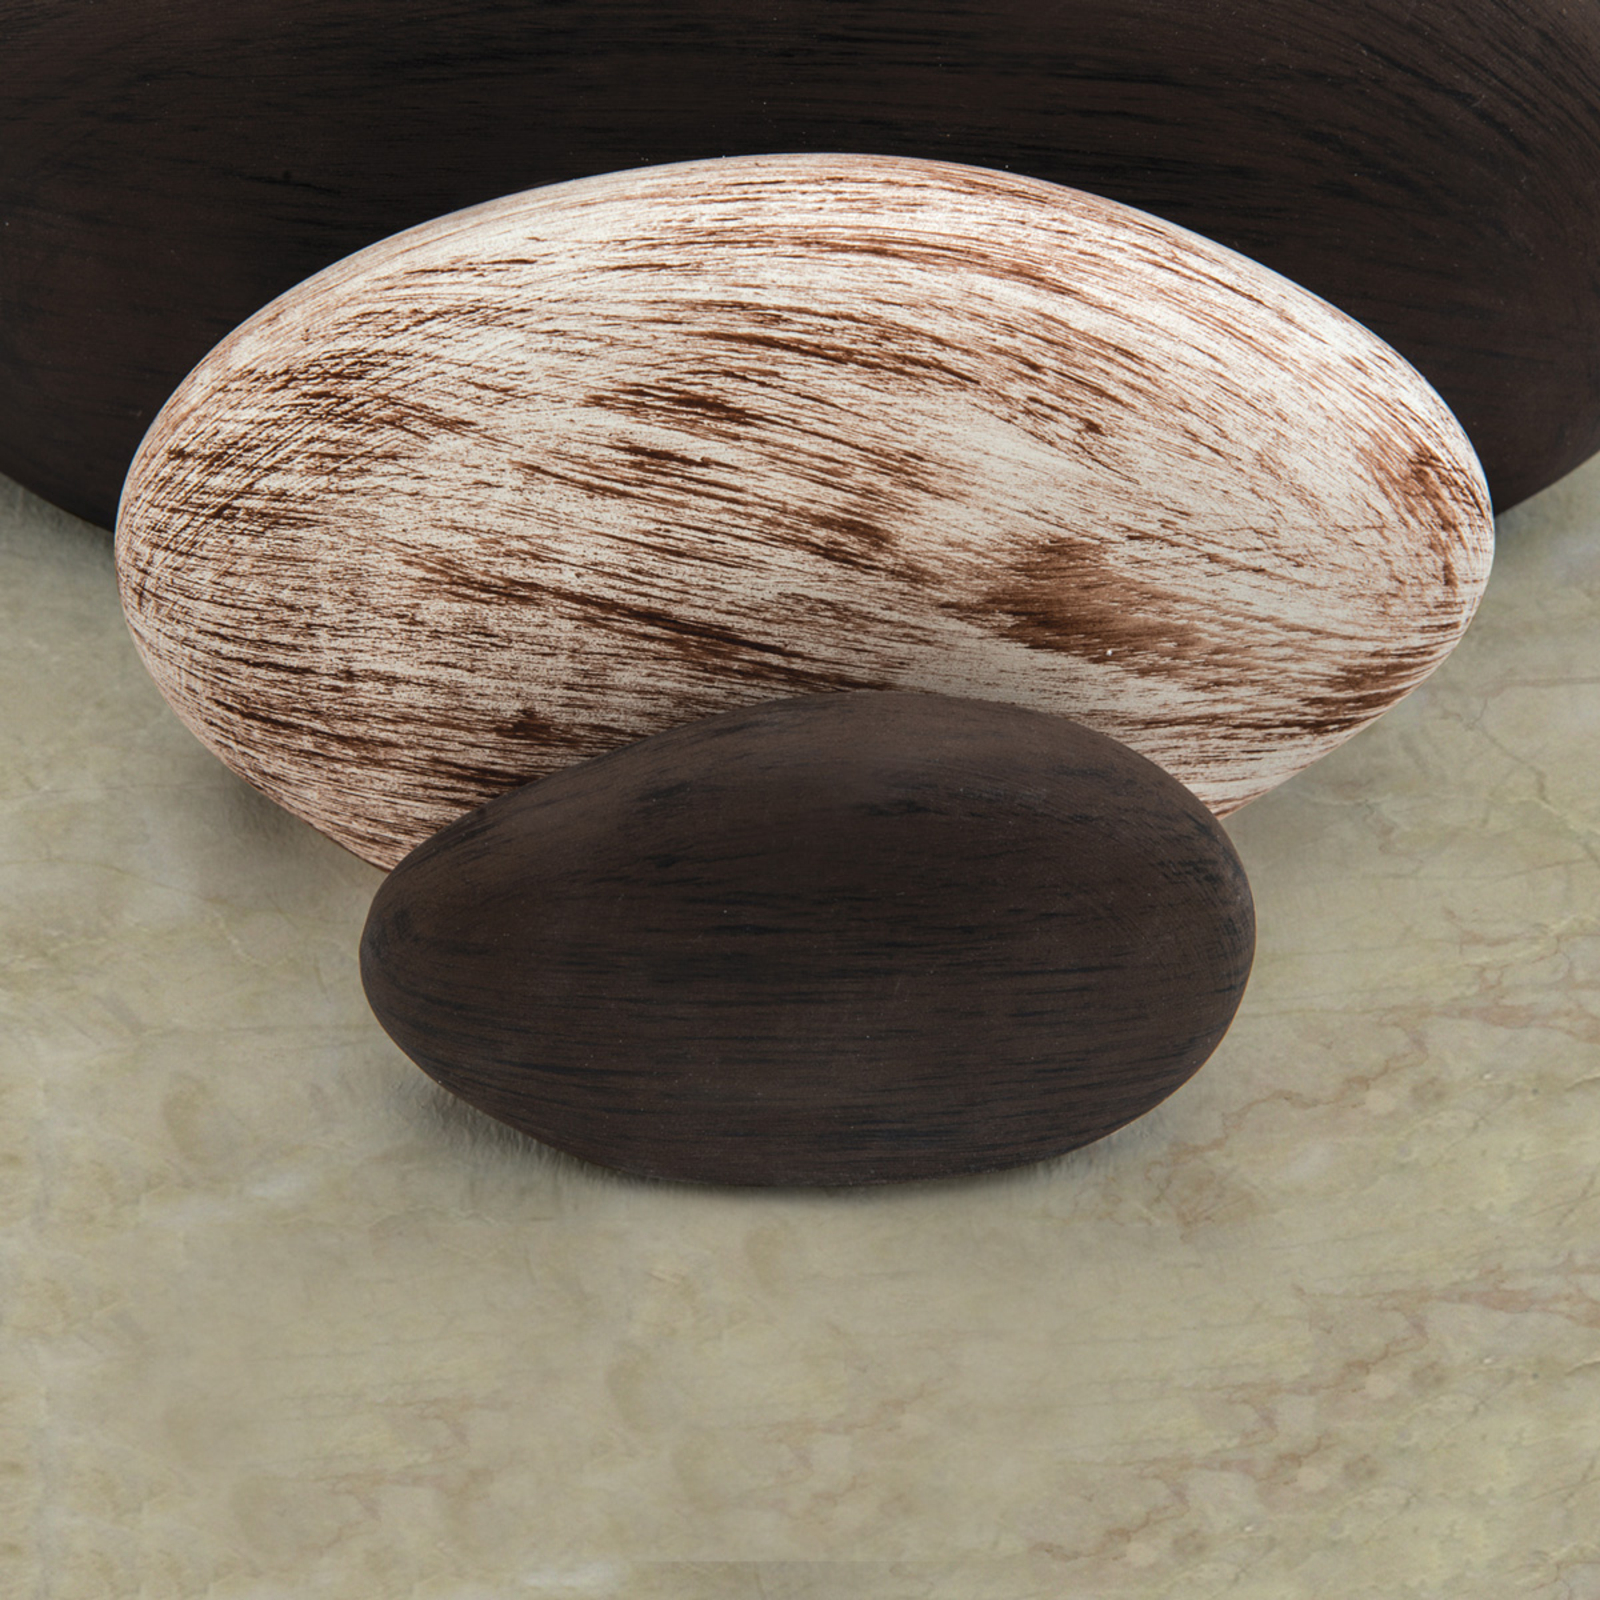 LITICA aplique imitación piedra, beige-marrón